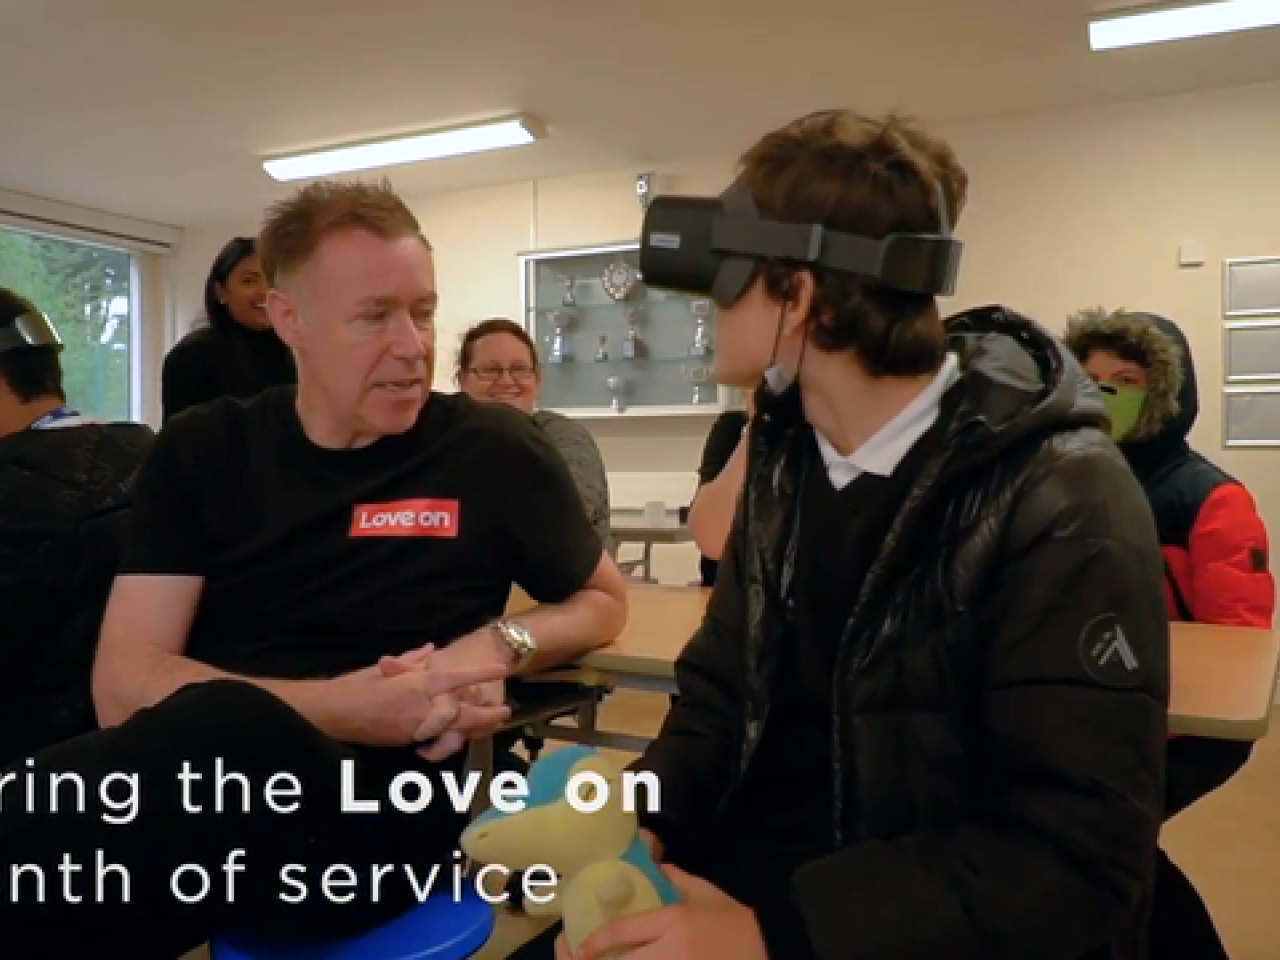 戴着VR头盔的人面对着一个穿着联想t恤的人